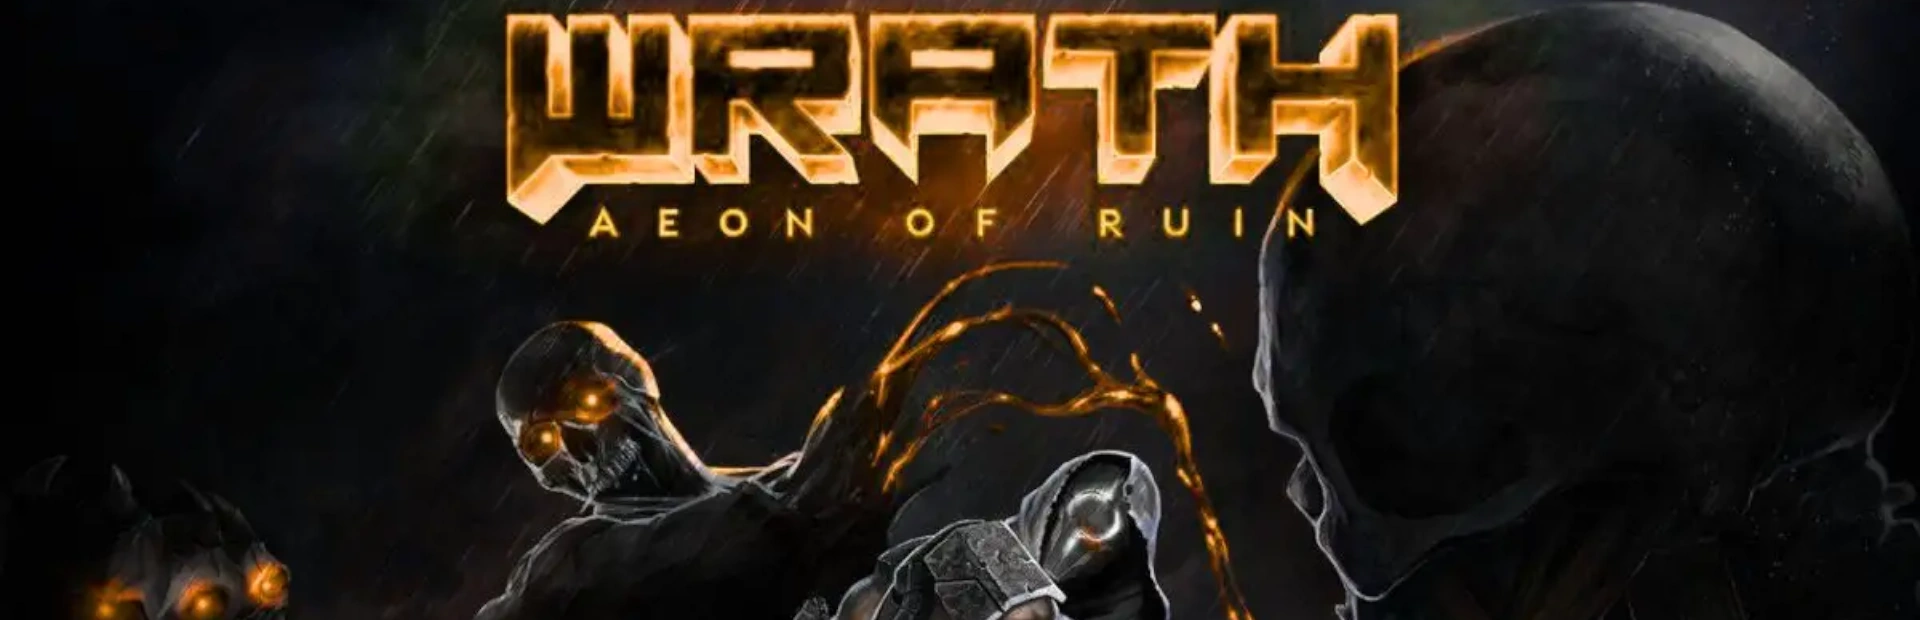 دانلود بازی WRATH: Aeon of Ruin برای کامپیوتر | گیمباتو